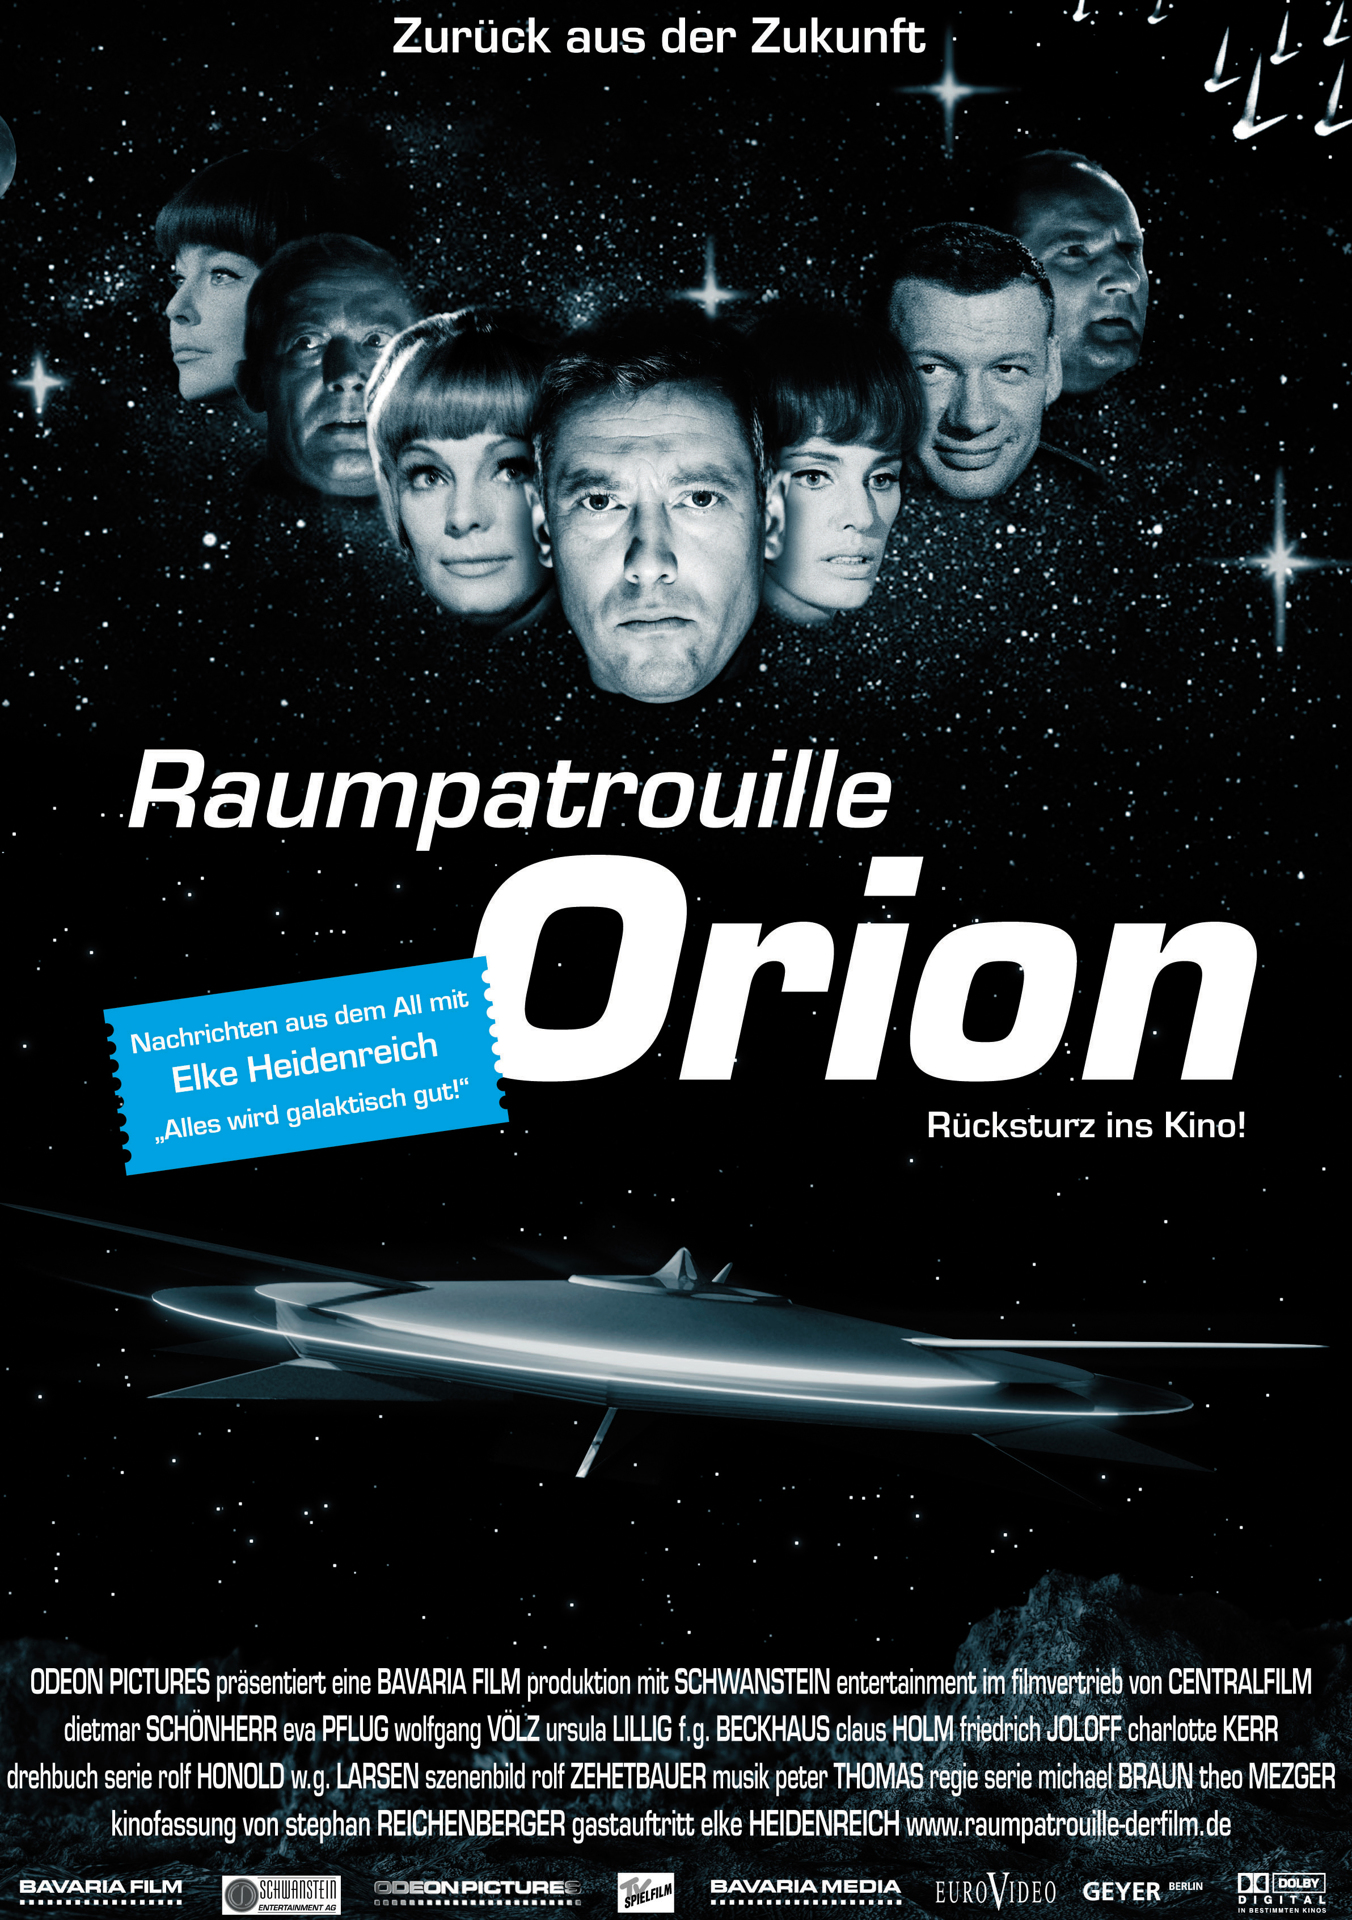 Orion űrhajó - A visszatérés online